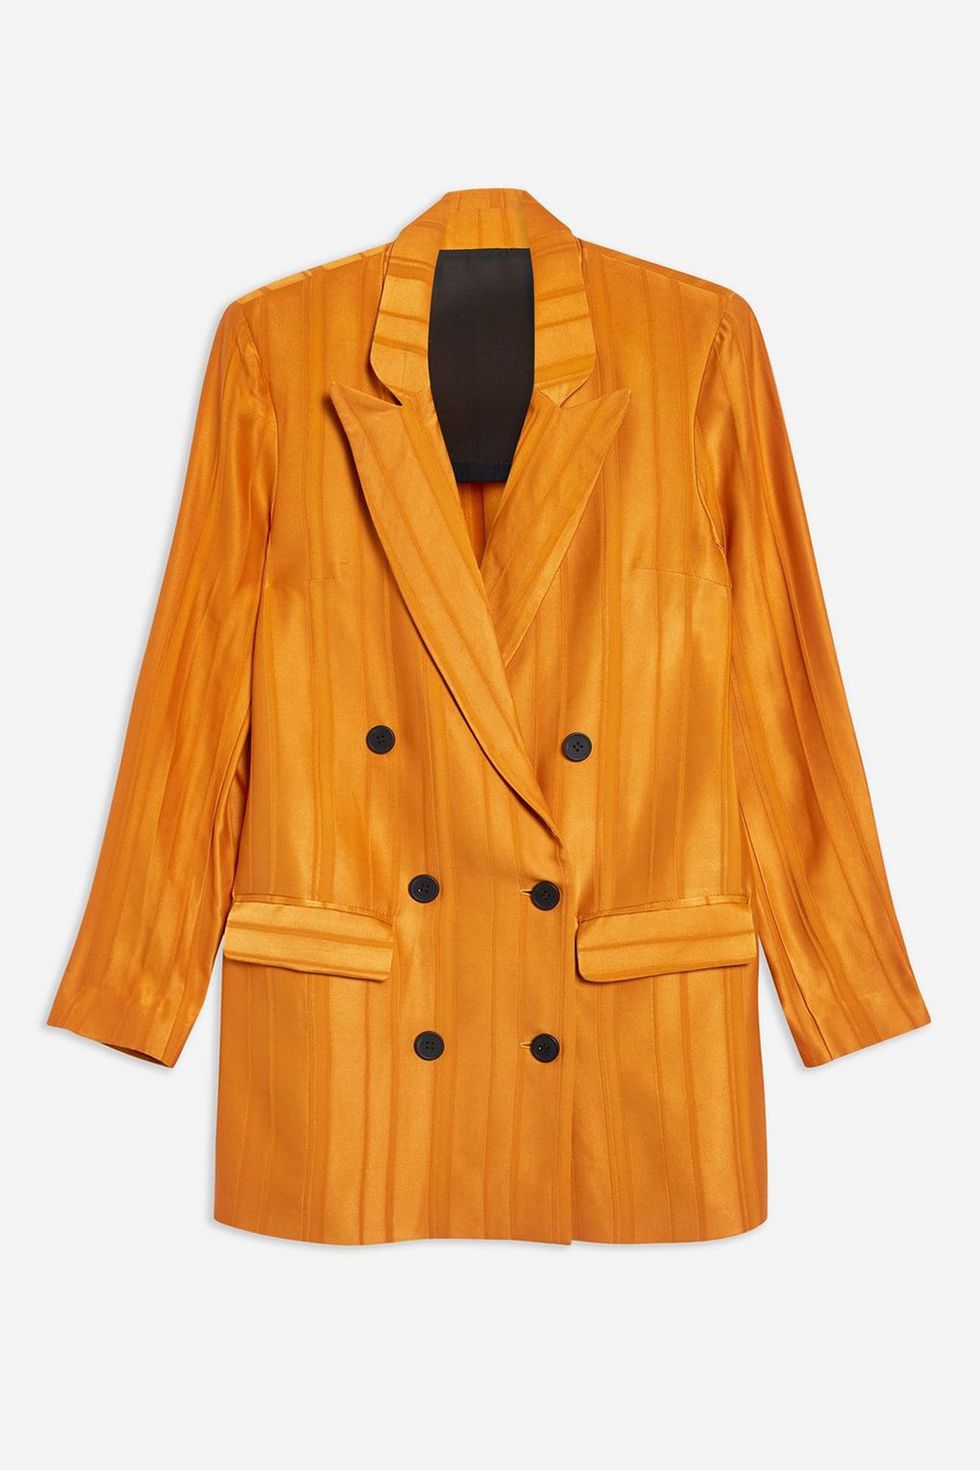 Clothing, Outerwear, Jacket, Orange, Sleeve, Blazer, Yellow, Tan, Coat, Button, 